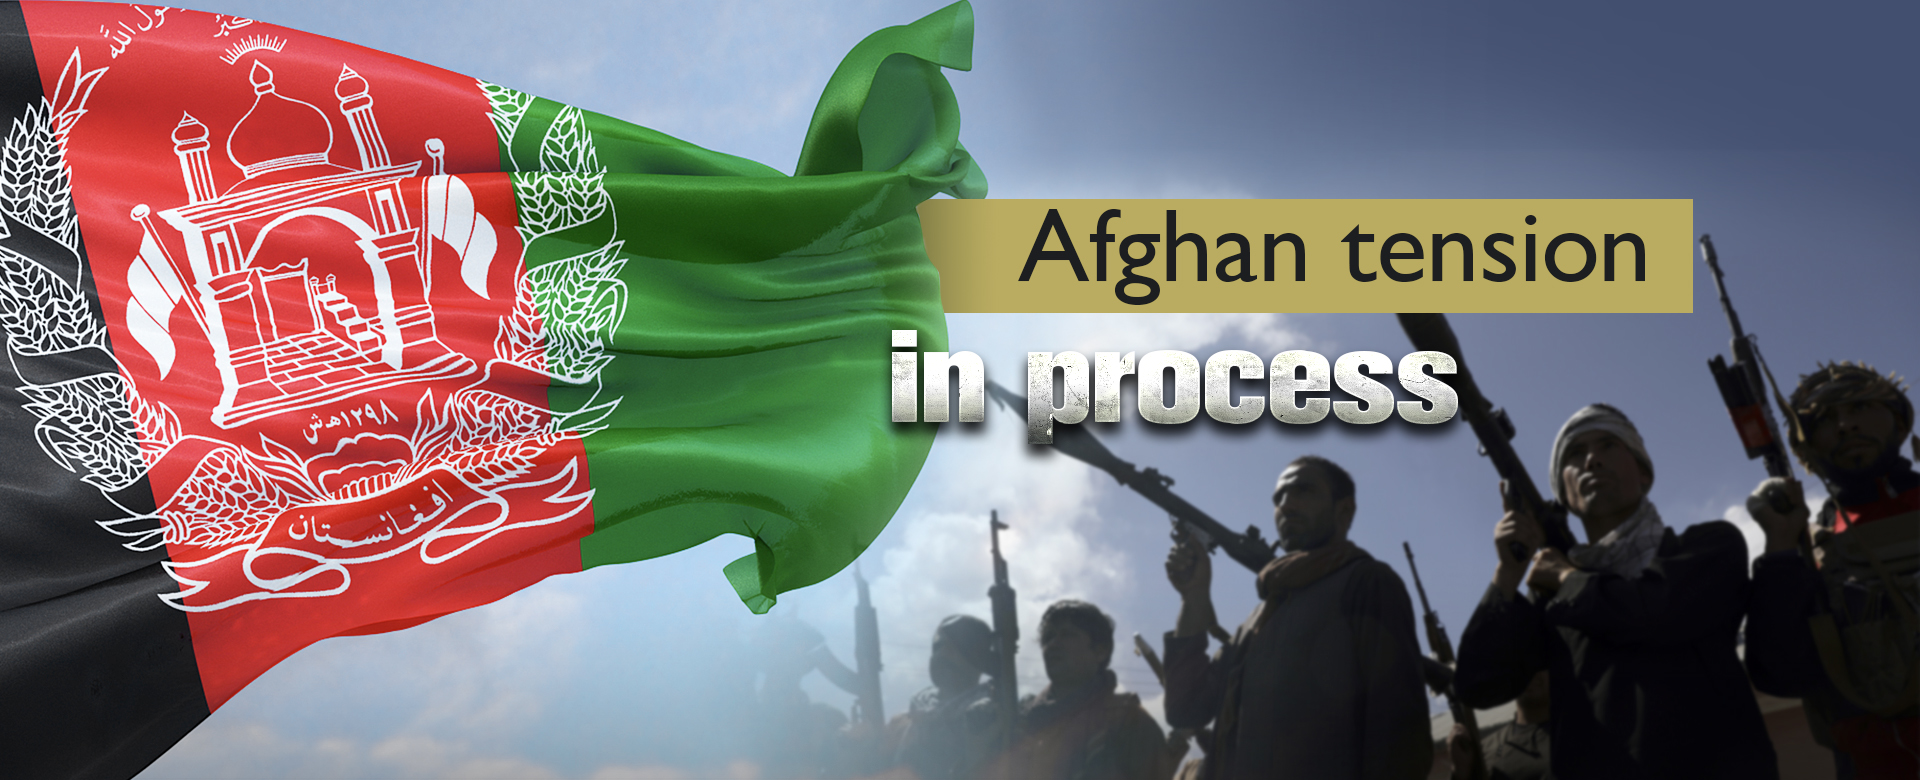 Afghan tension in process